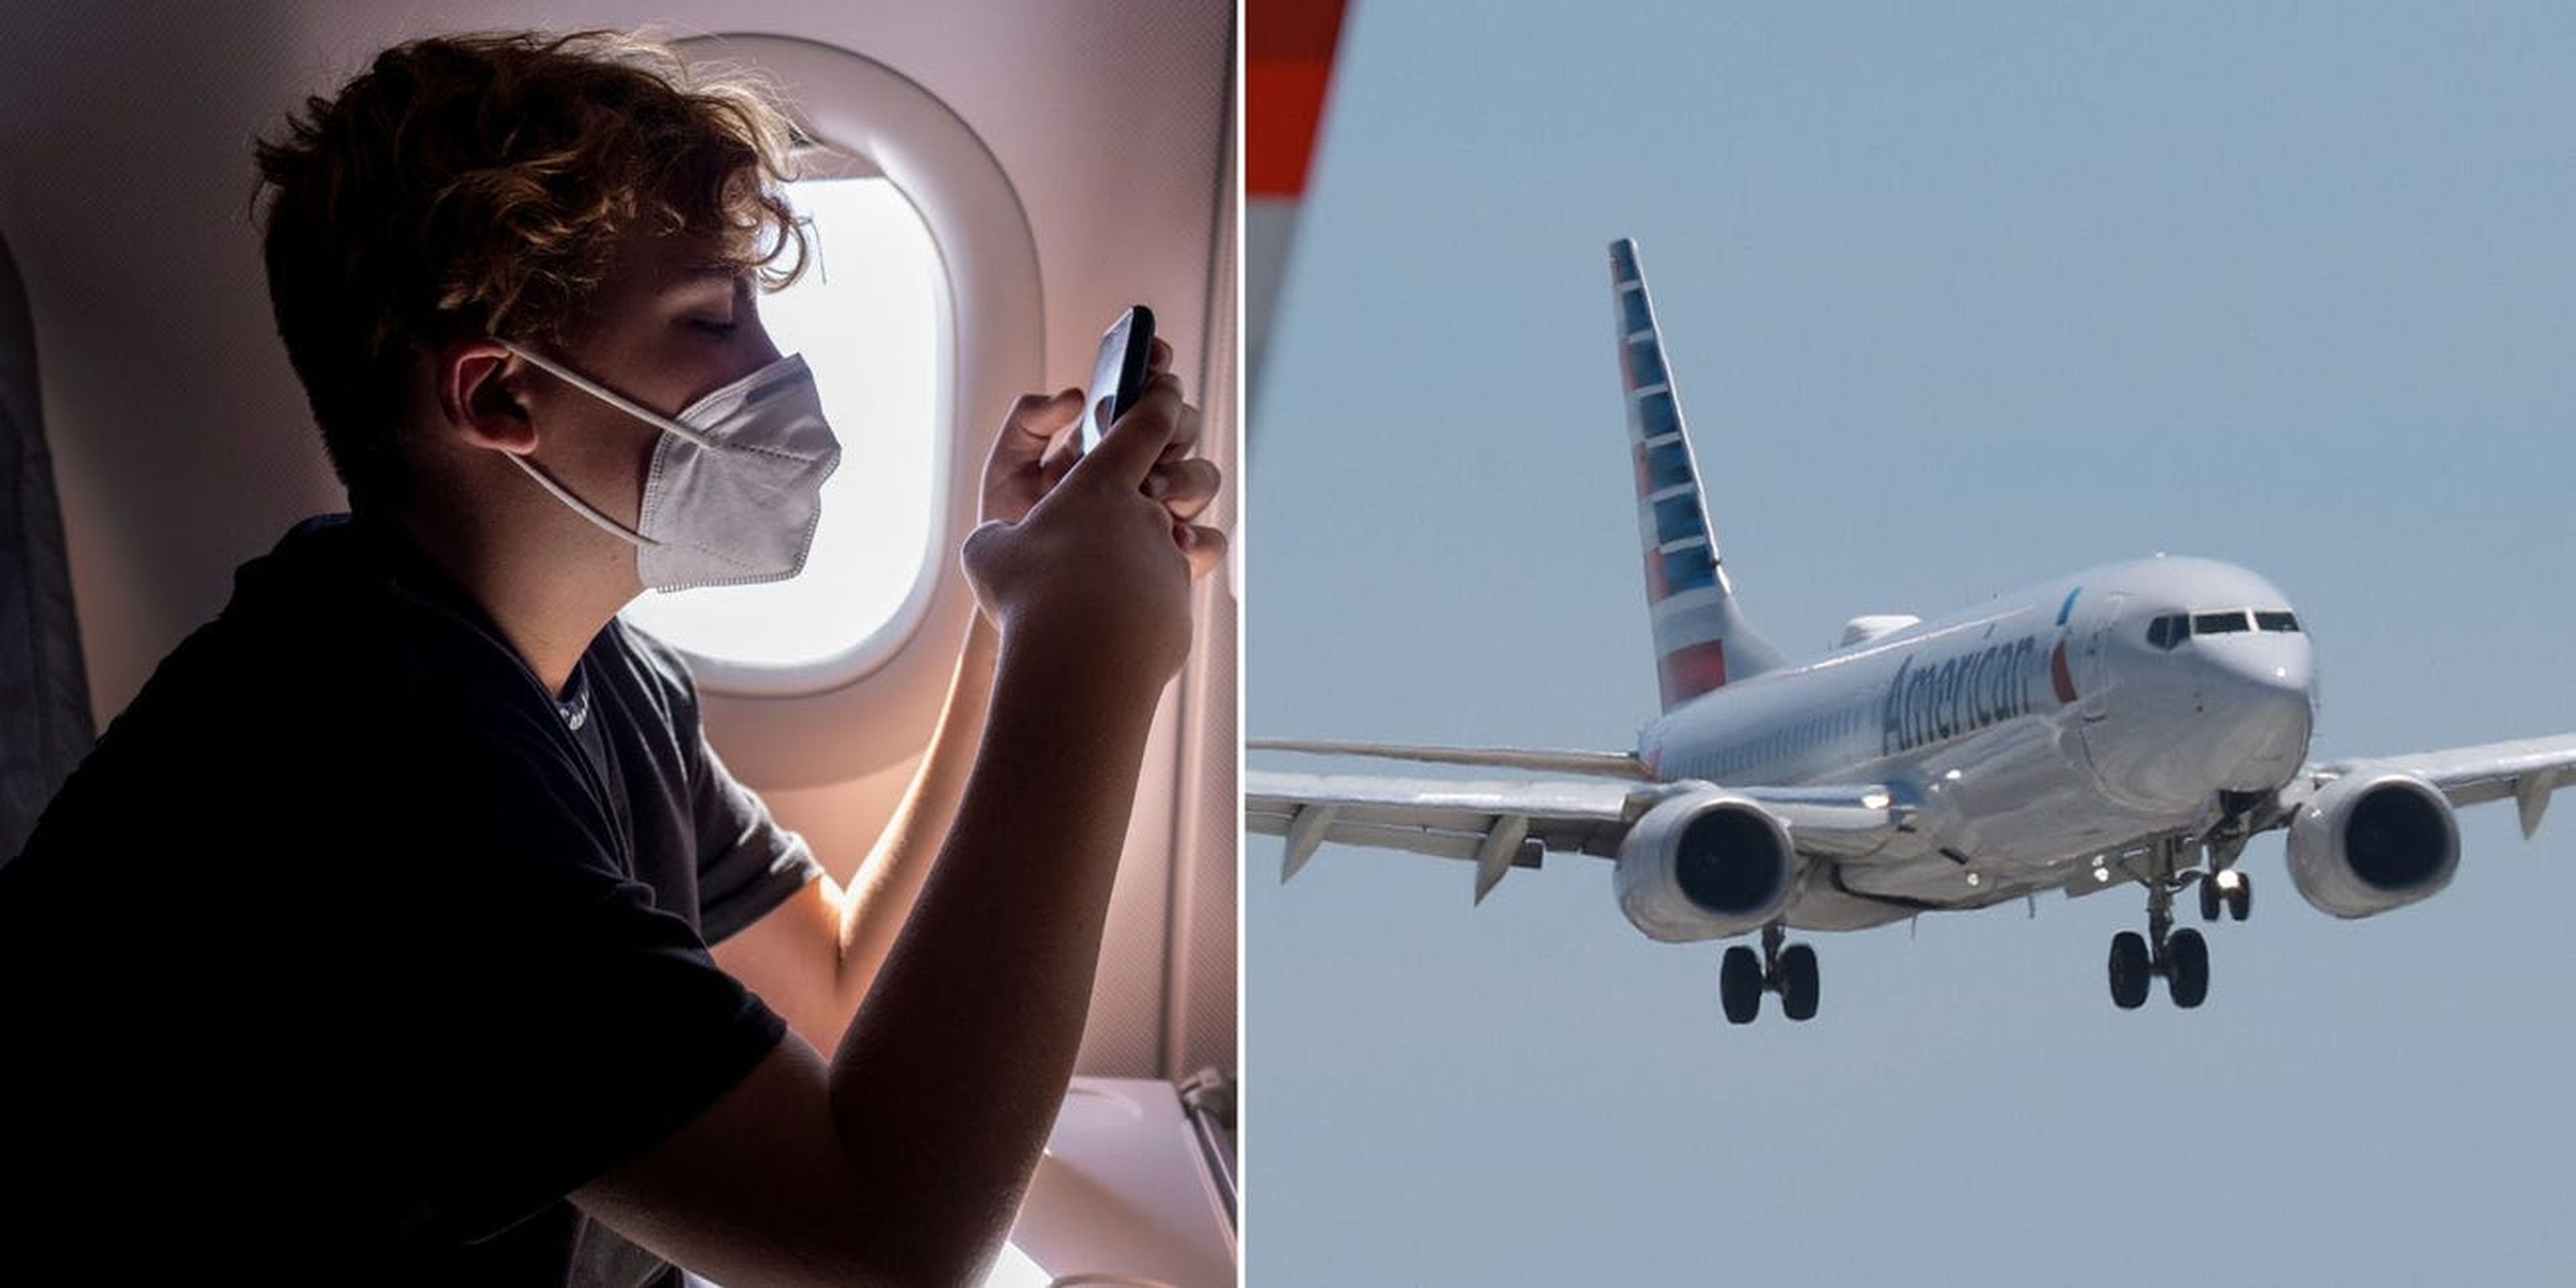 American Airlines canceló el billete de un adolescente tras ser sorprendido planeando saltarse el vuelo a Nueva York (no aparece en la foto).